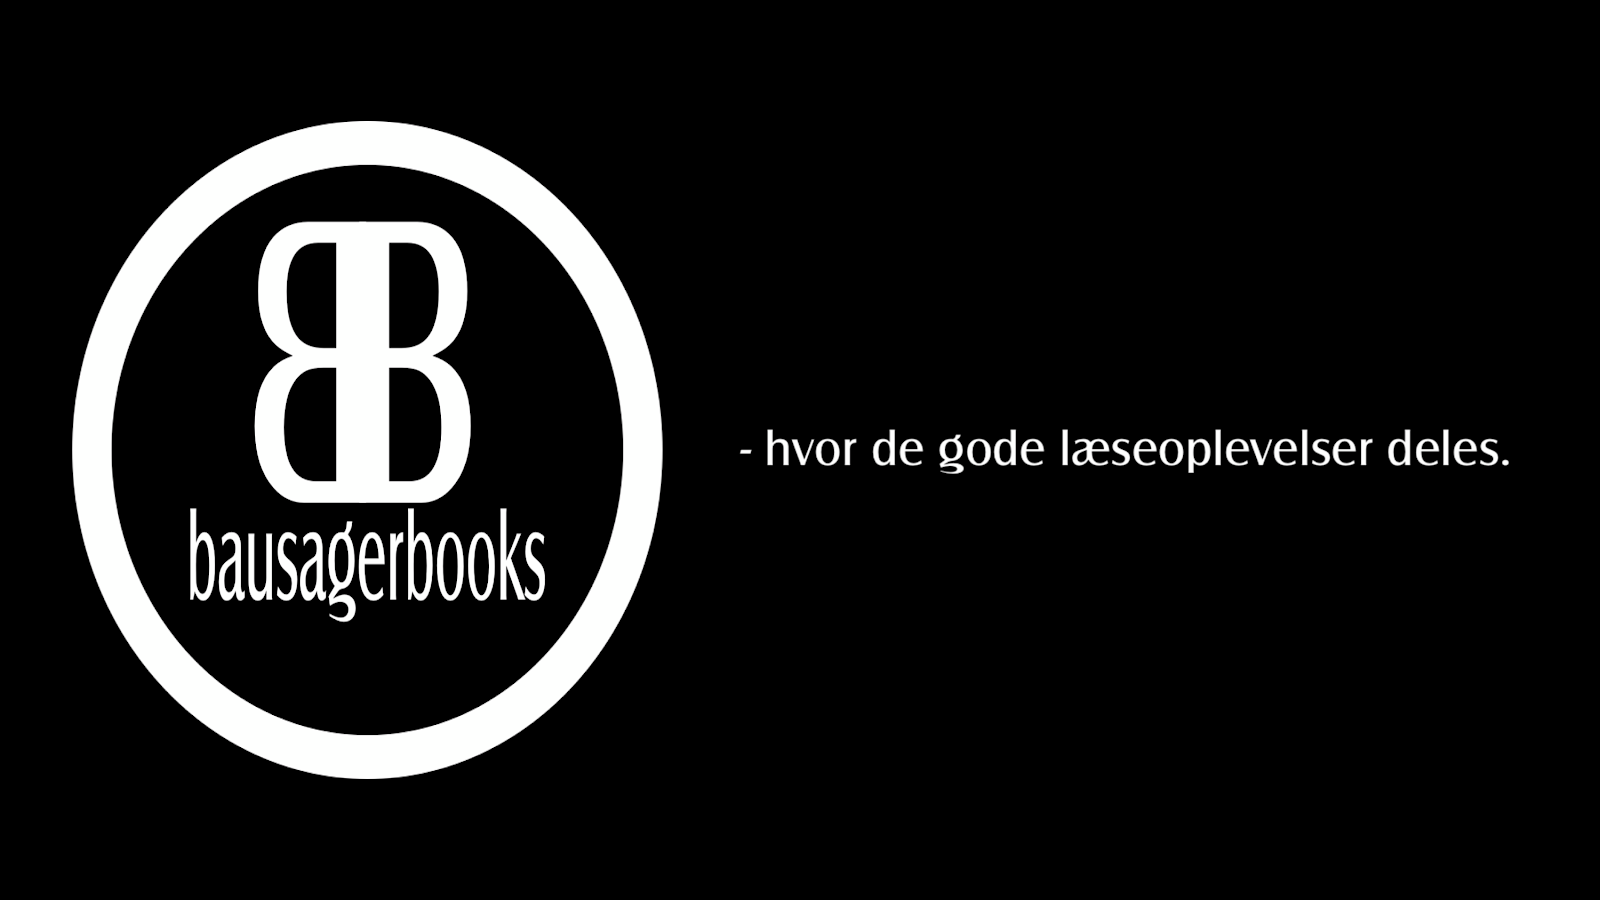 Bausagerbooks